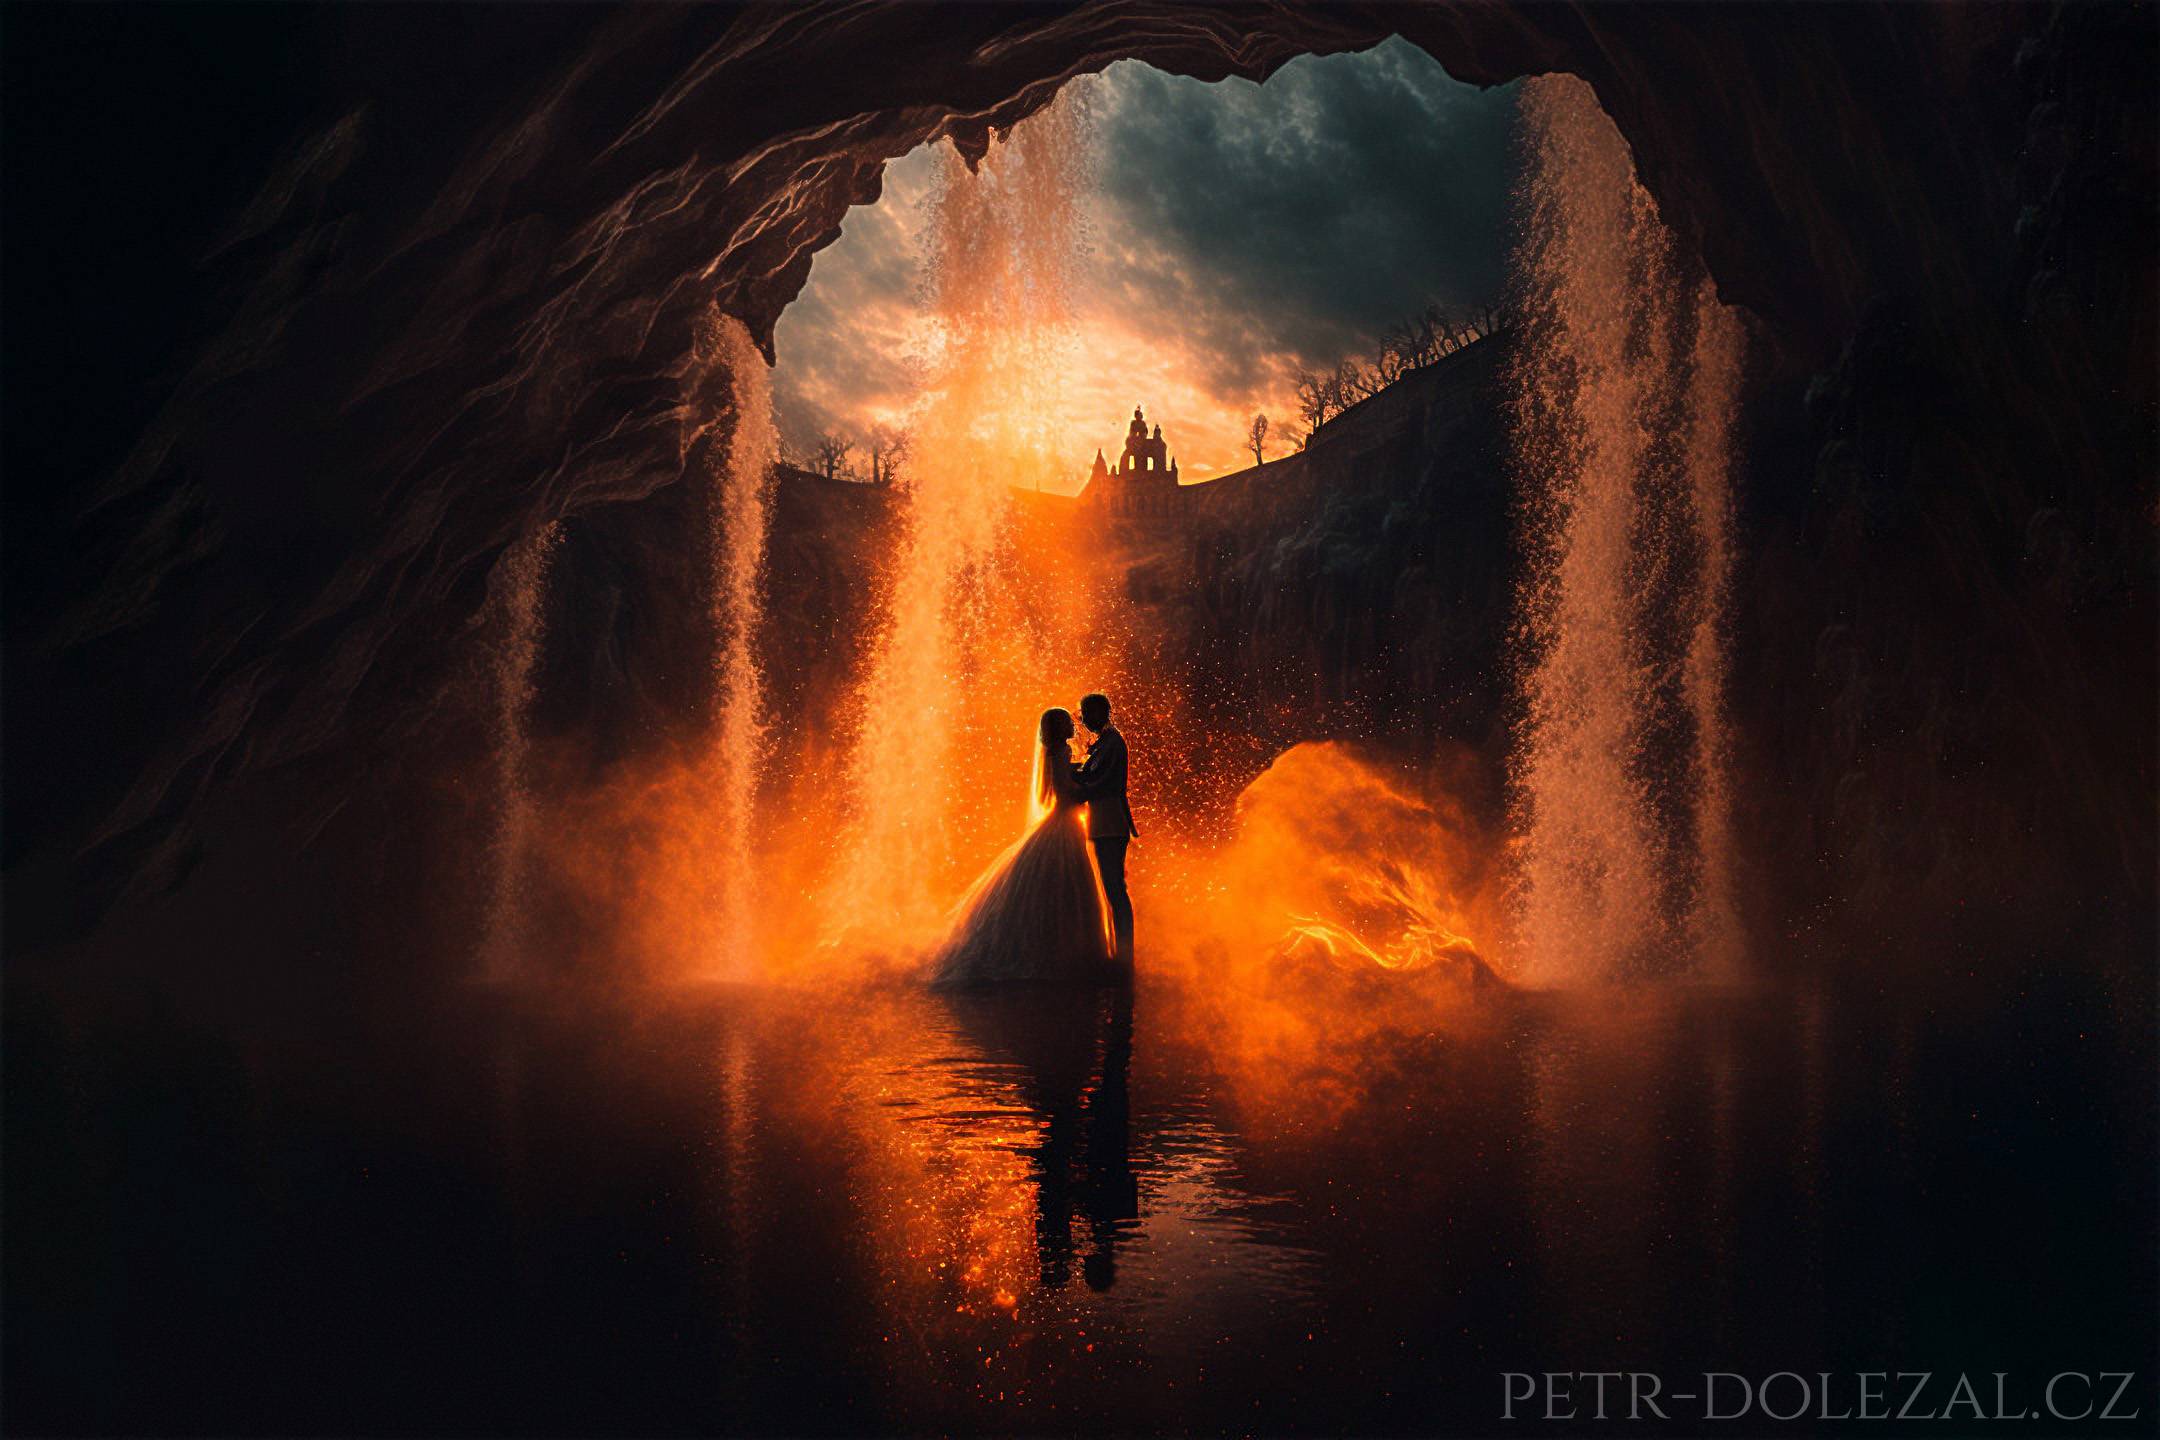 Siluety nevěsty a ženicha v průhledu jeskyně, vodopád osvětlený protisvětlem vycházejícího slunce vypadá jak rozžhavený oheň, dole voda s odrazem ženicha a nevěsty